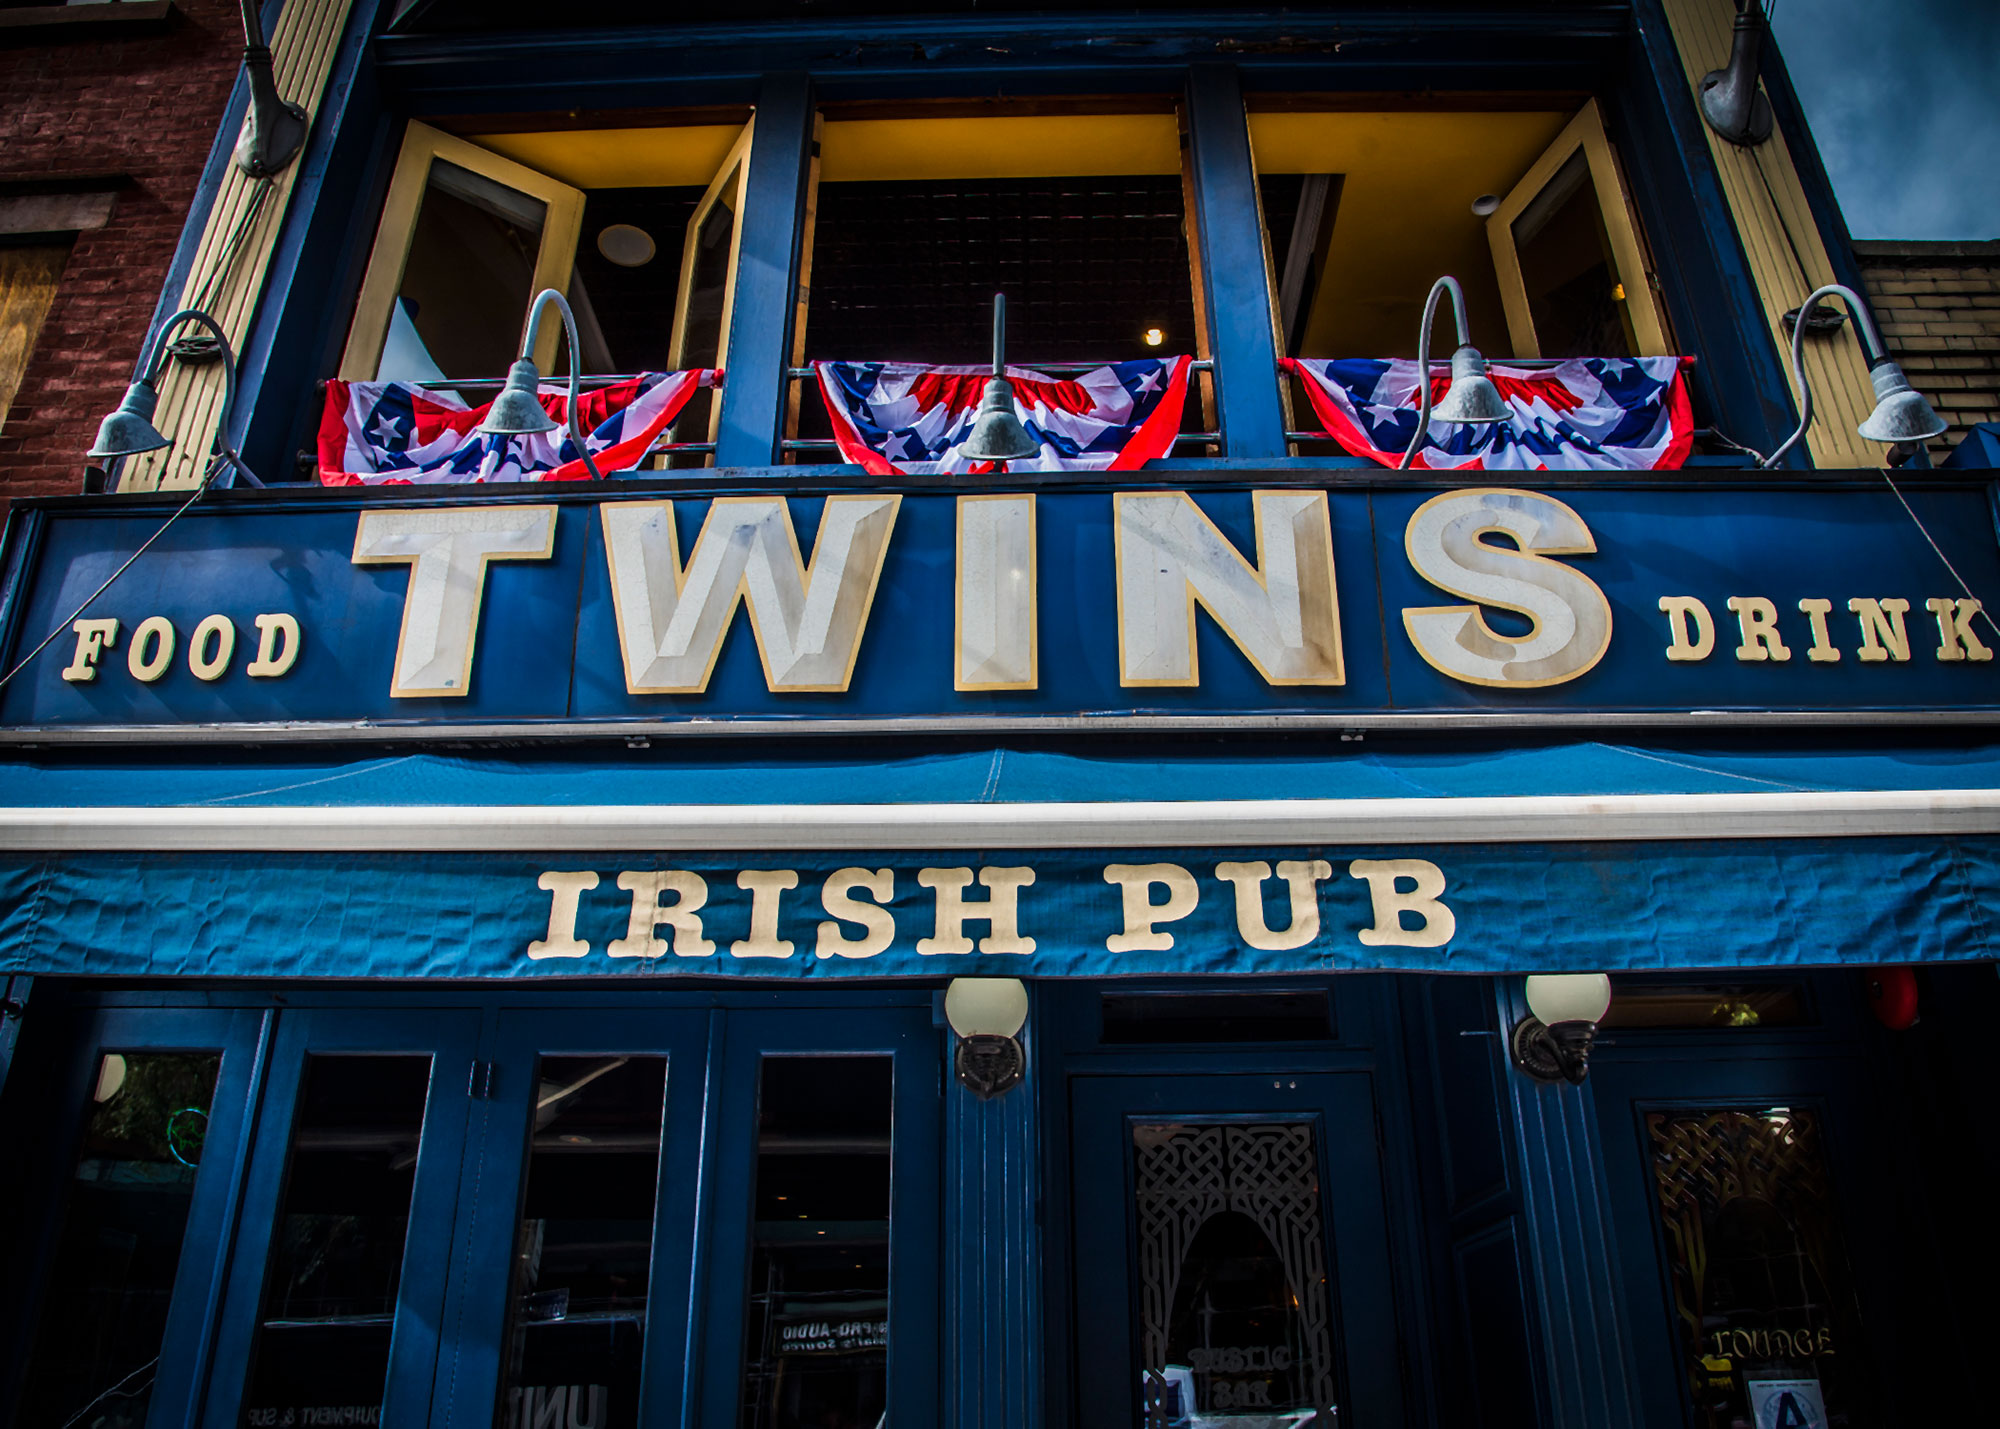 Twins Irish Pub sign